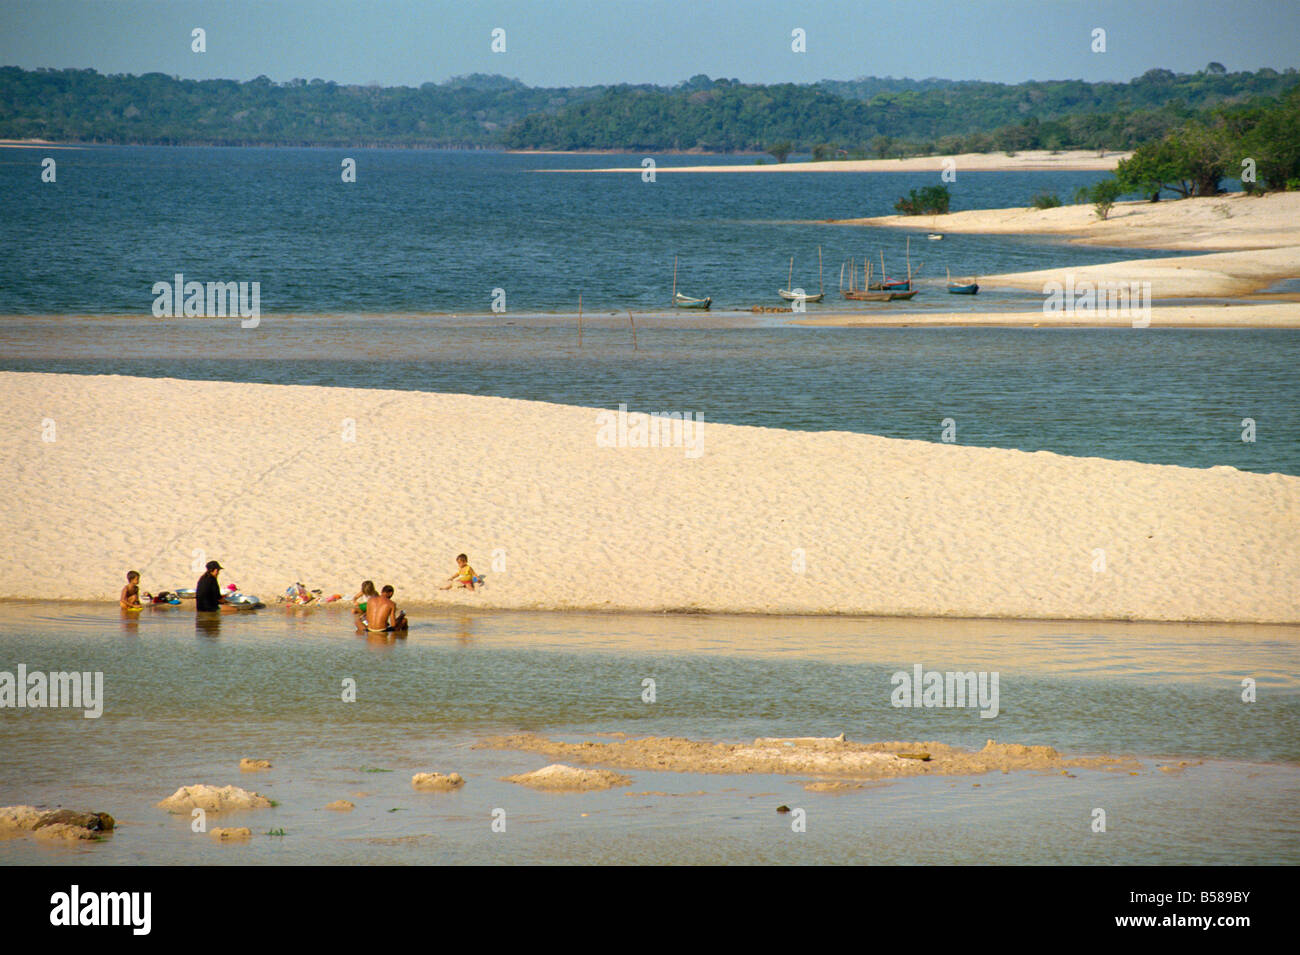 Gruppi di persone e barche sulla sabbia sputa spiagge di Alter do Chao sul fiume Tapajos nell'area amazzonica del Brasile Foto Stock